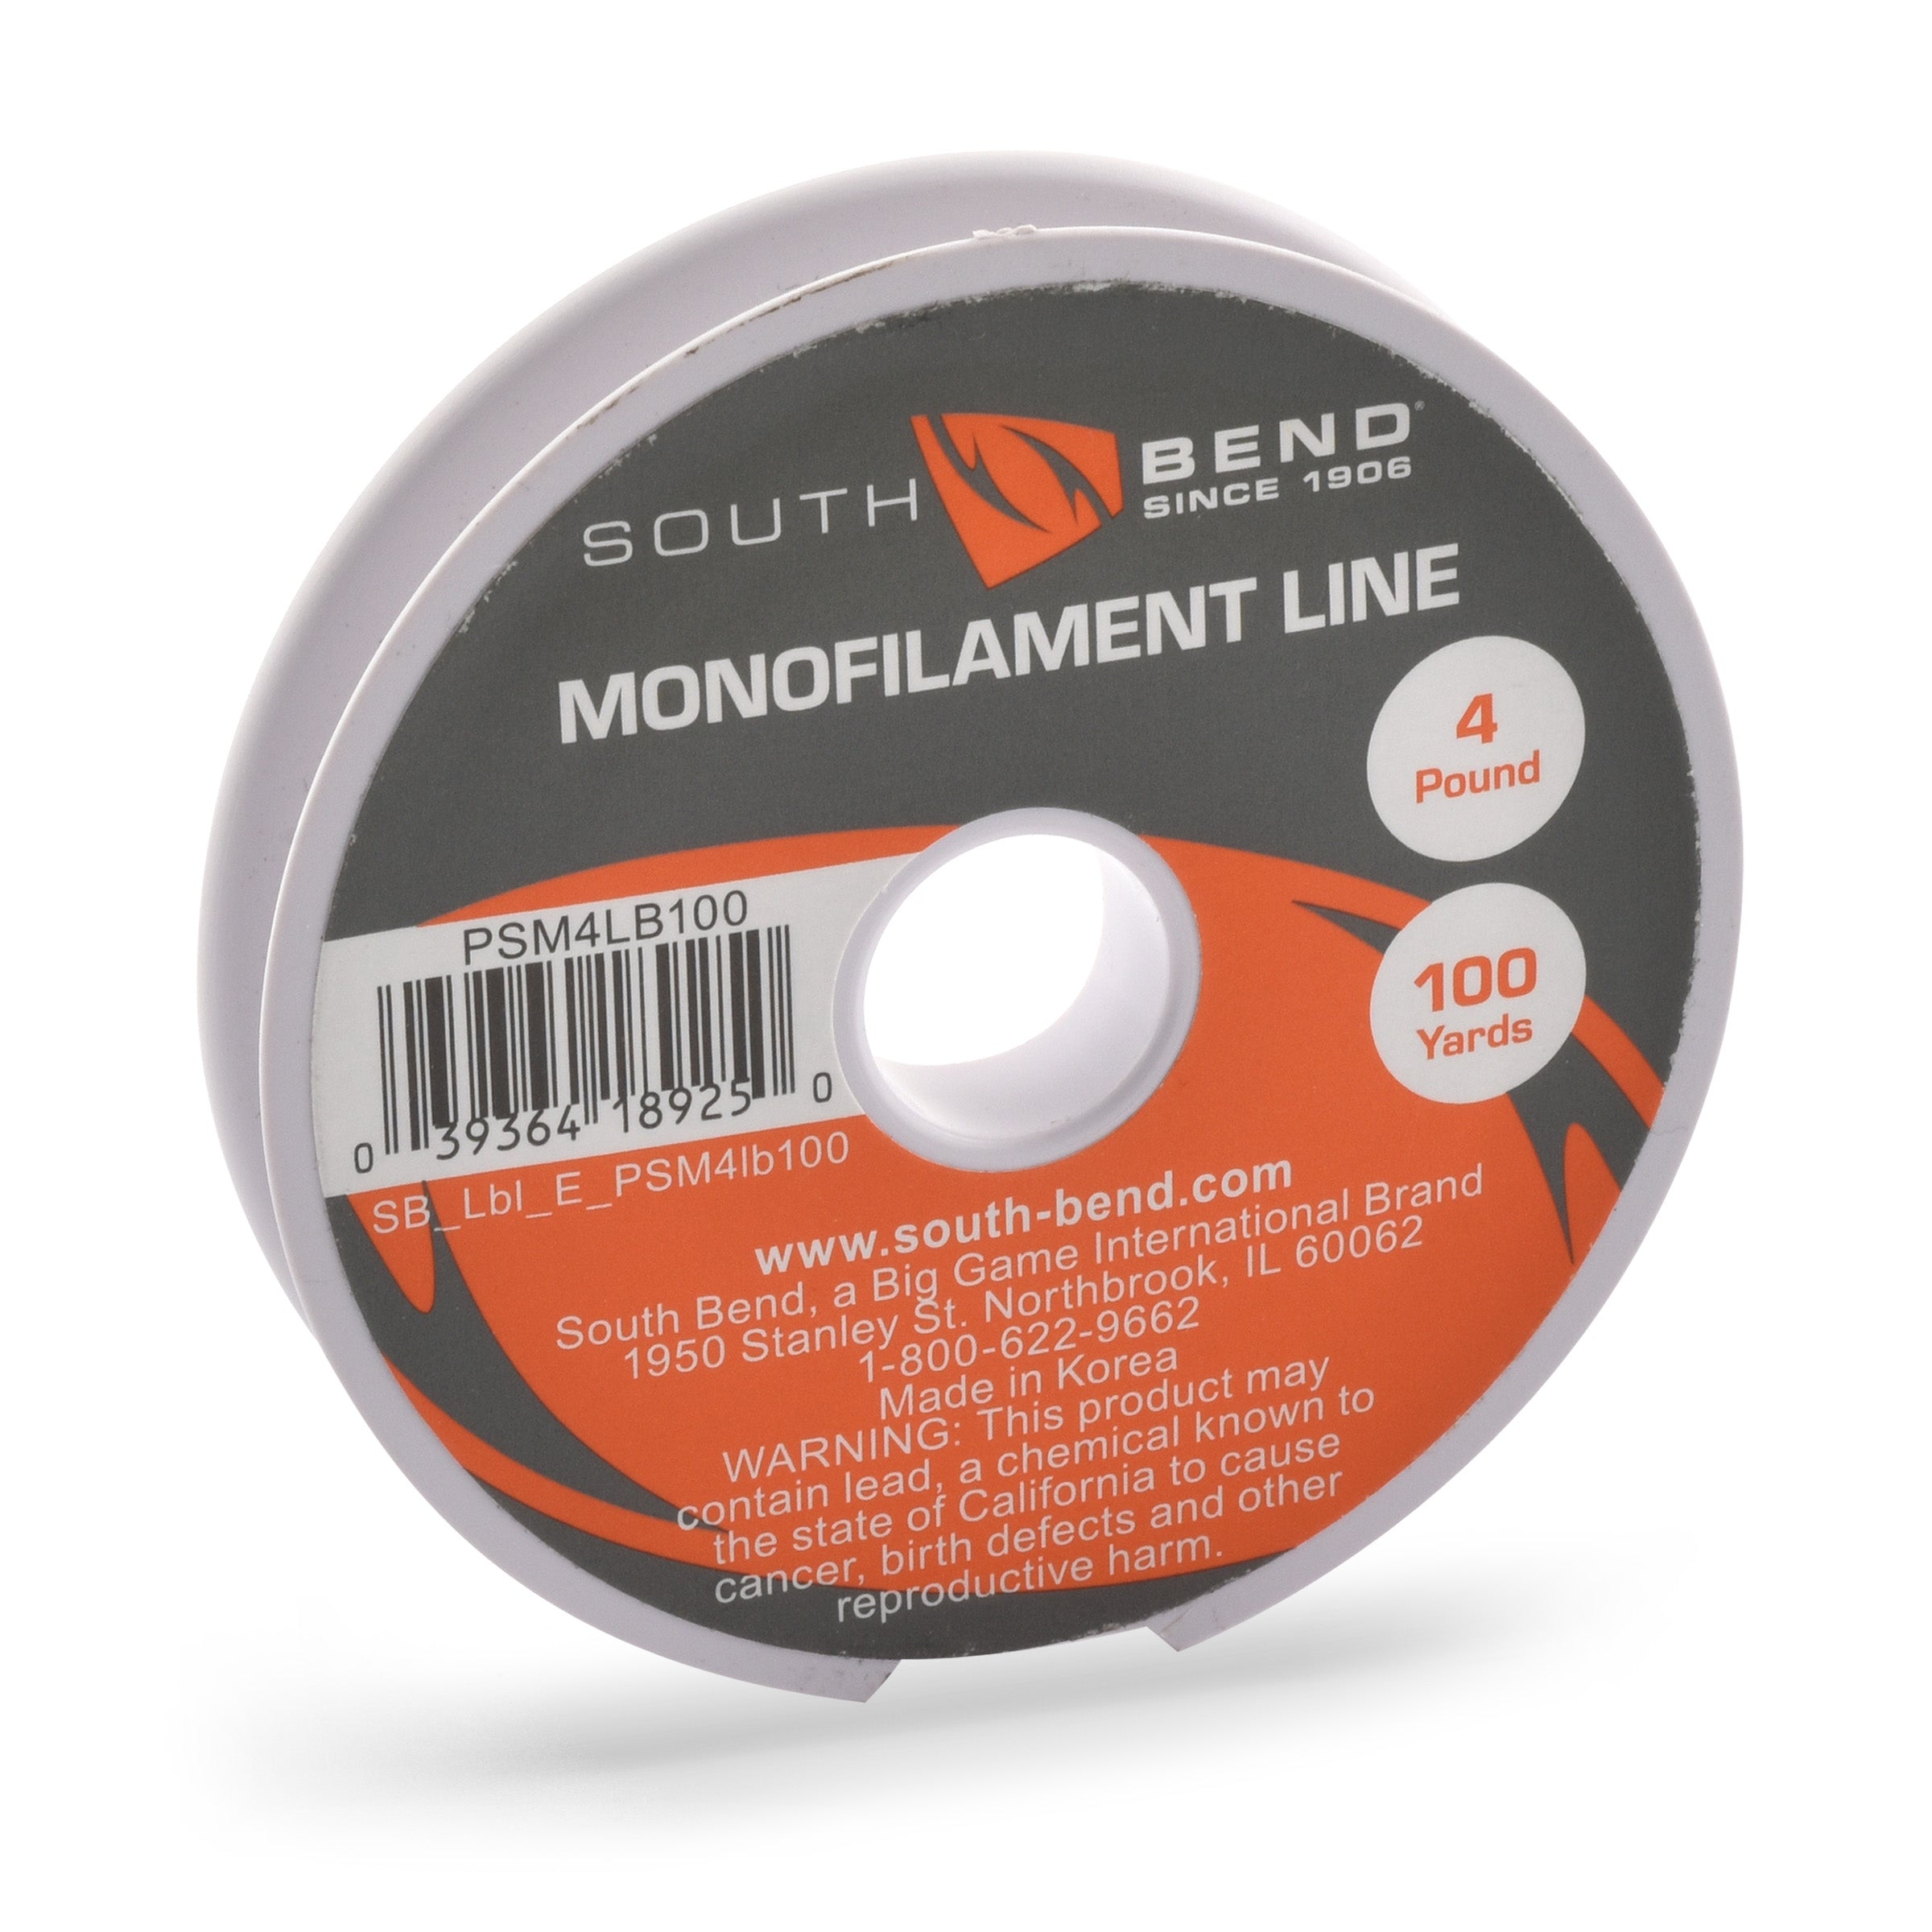 South Bend PSM6LB100 Pony Spool Mono 6lb 100 yd